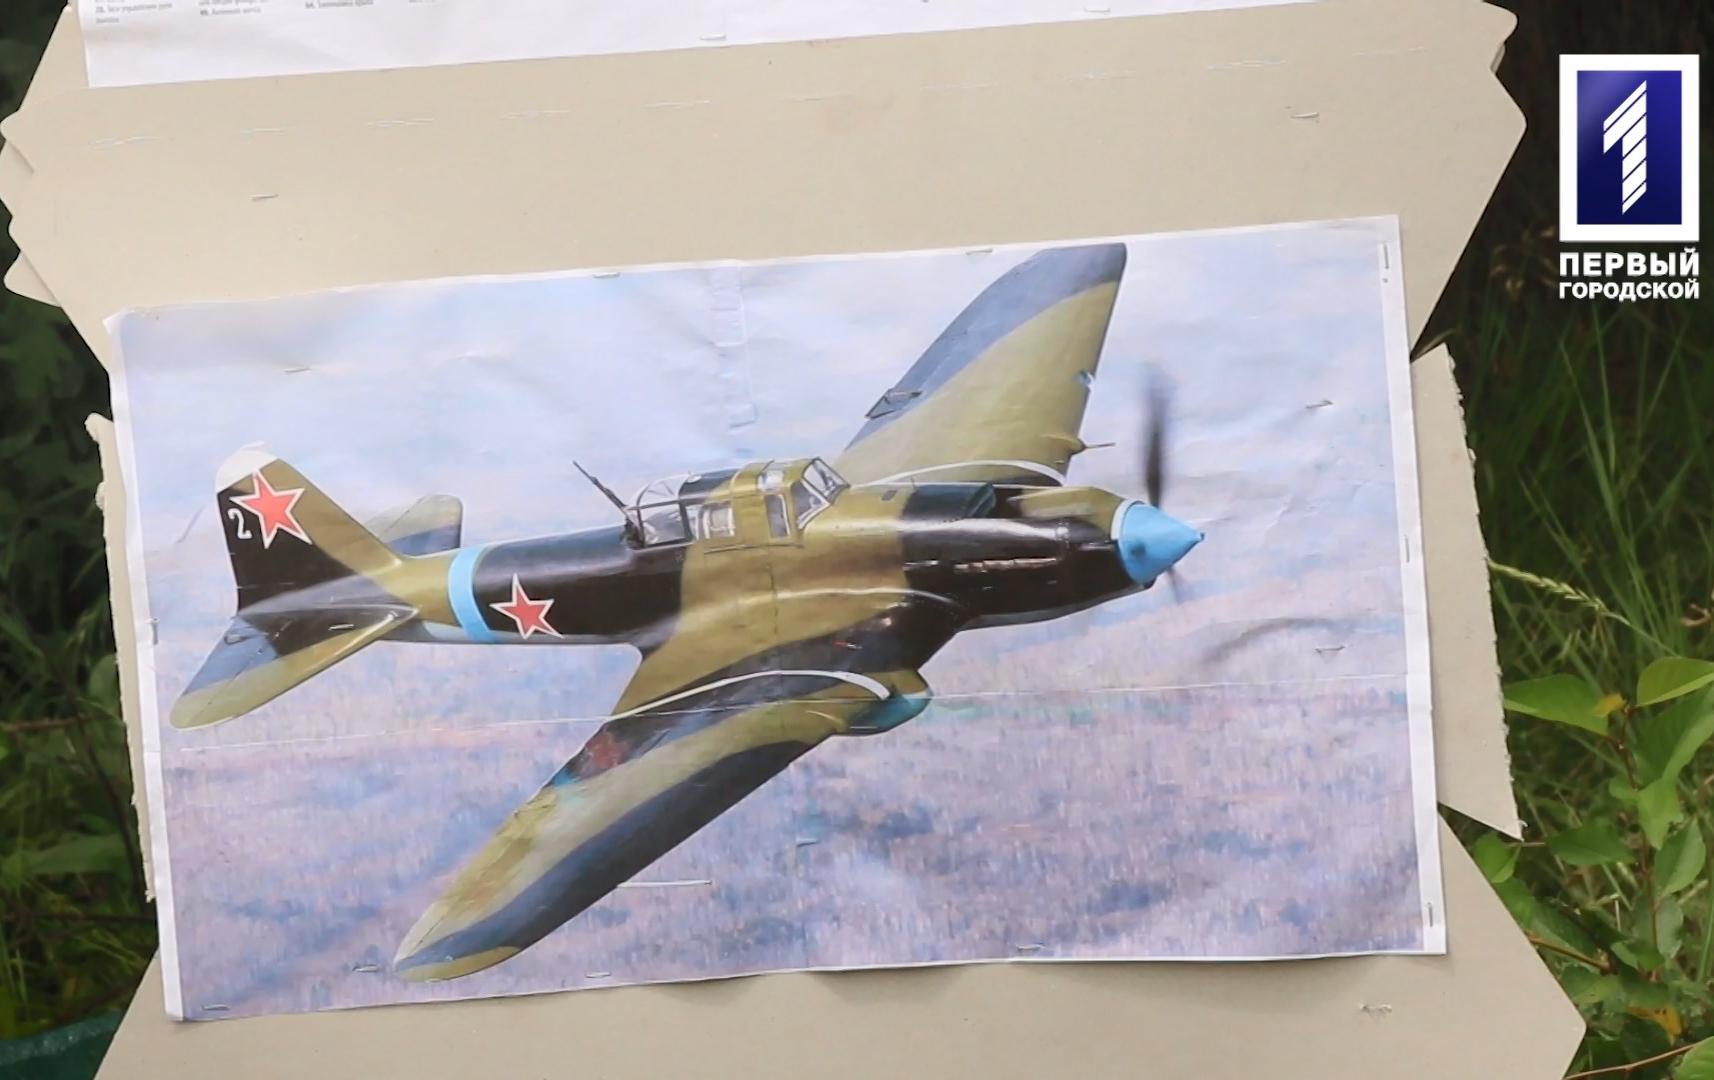 Пошуковці з Кривого Рогу розкопали залишки літака часів Другої світової війни